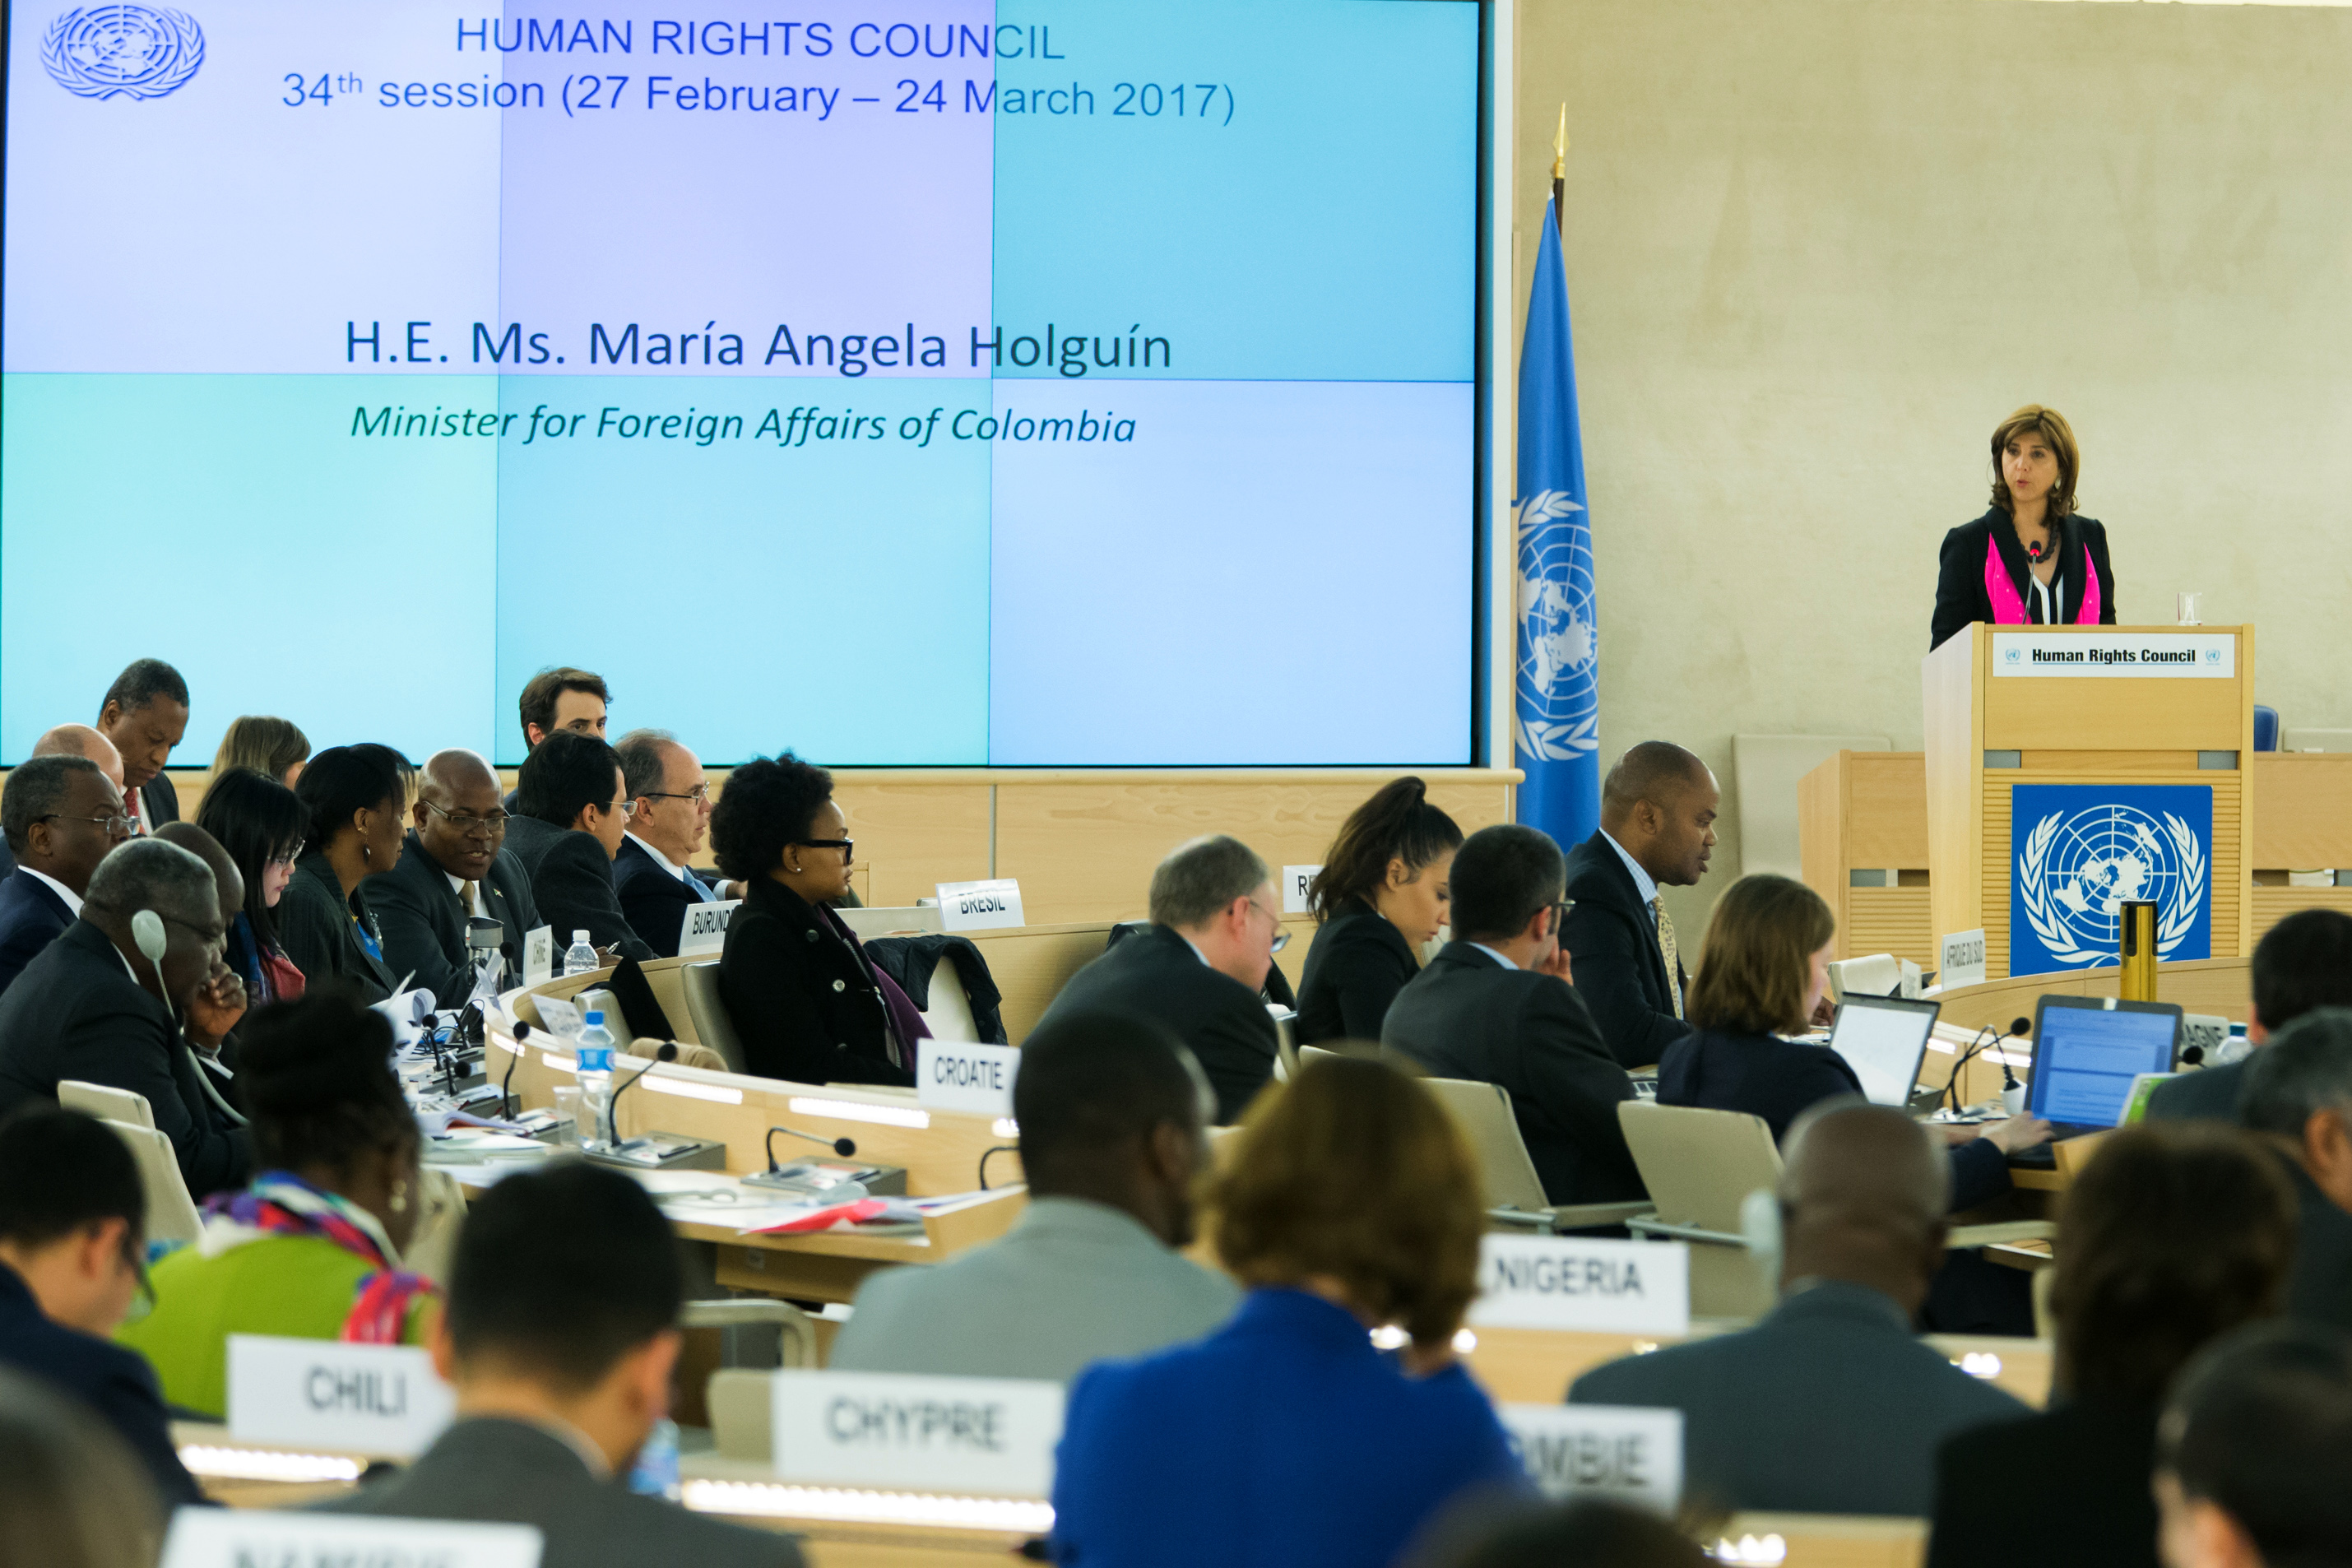 Canciller Holguín intervino en el Segmento de Alto Nivel de la 34° sesión del Consejo de Derechos Humanos de las Naciones Unidas